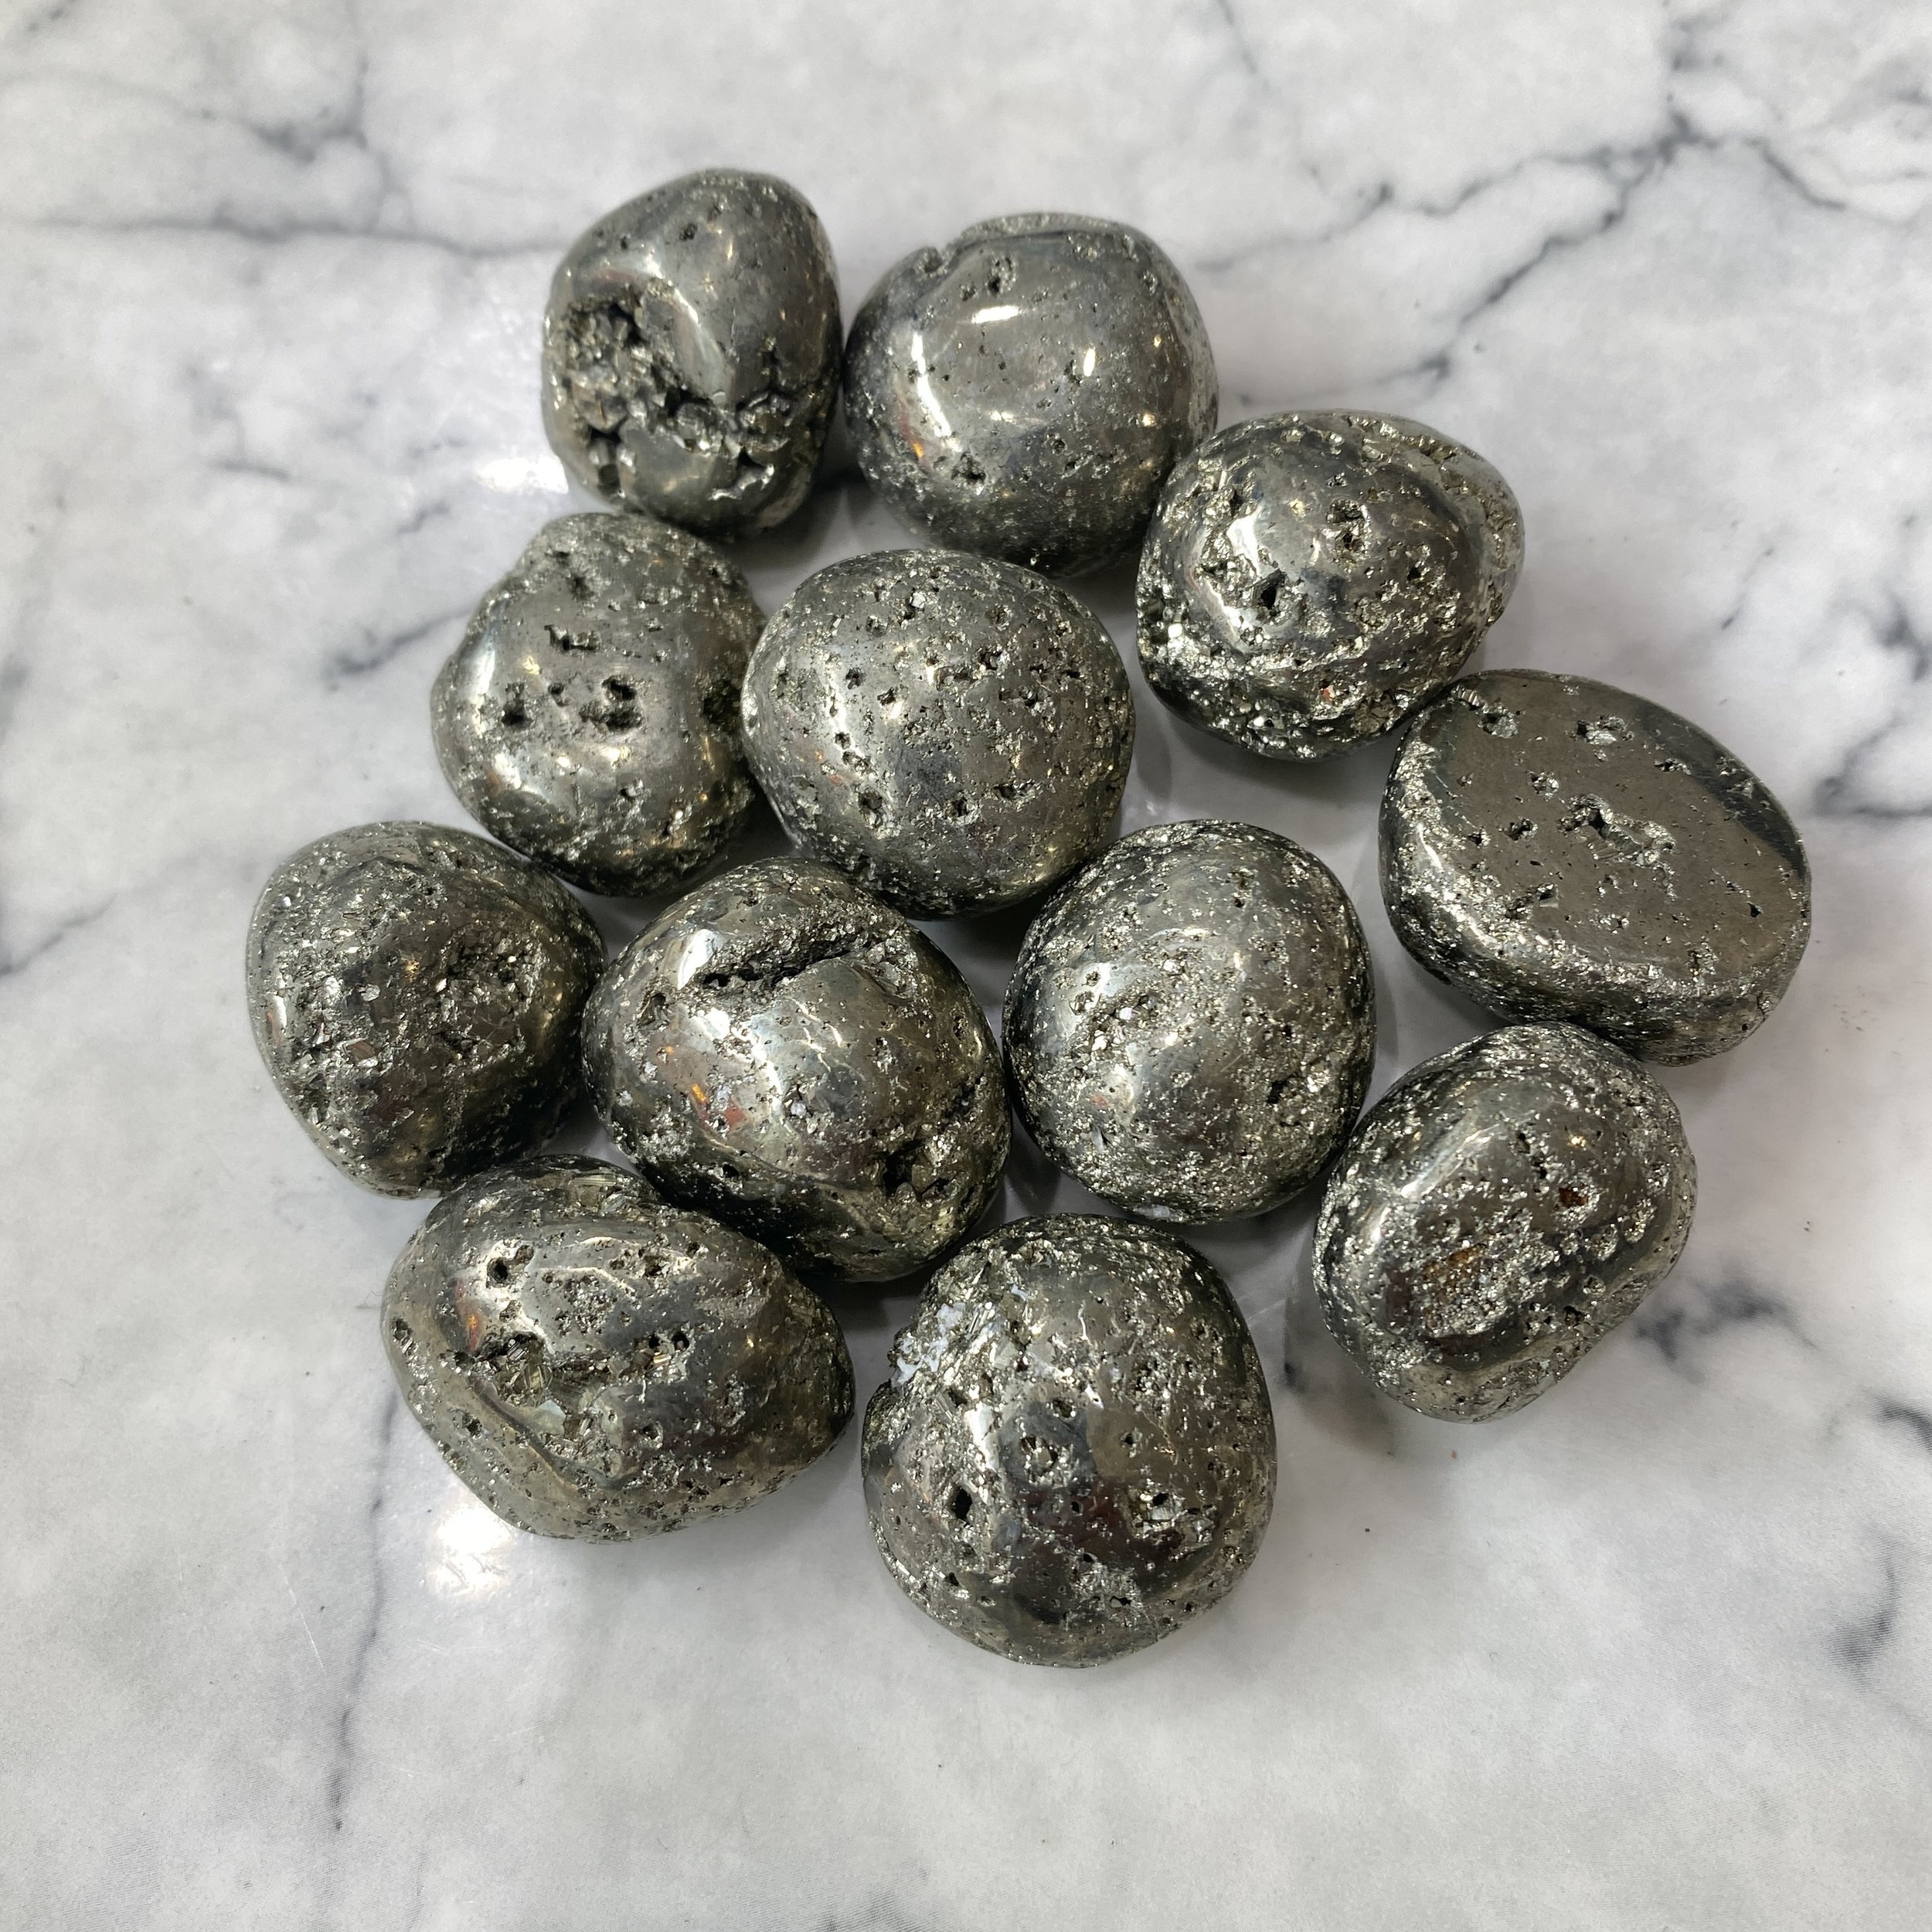 Pyrite Tumble Stone – $8